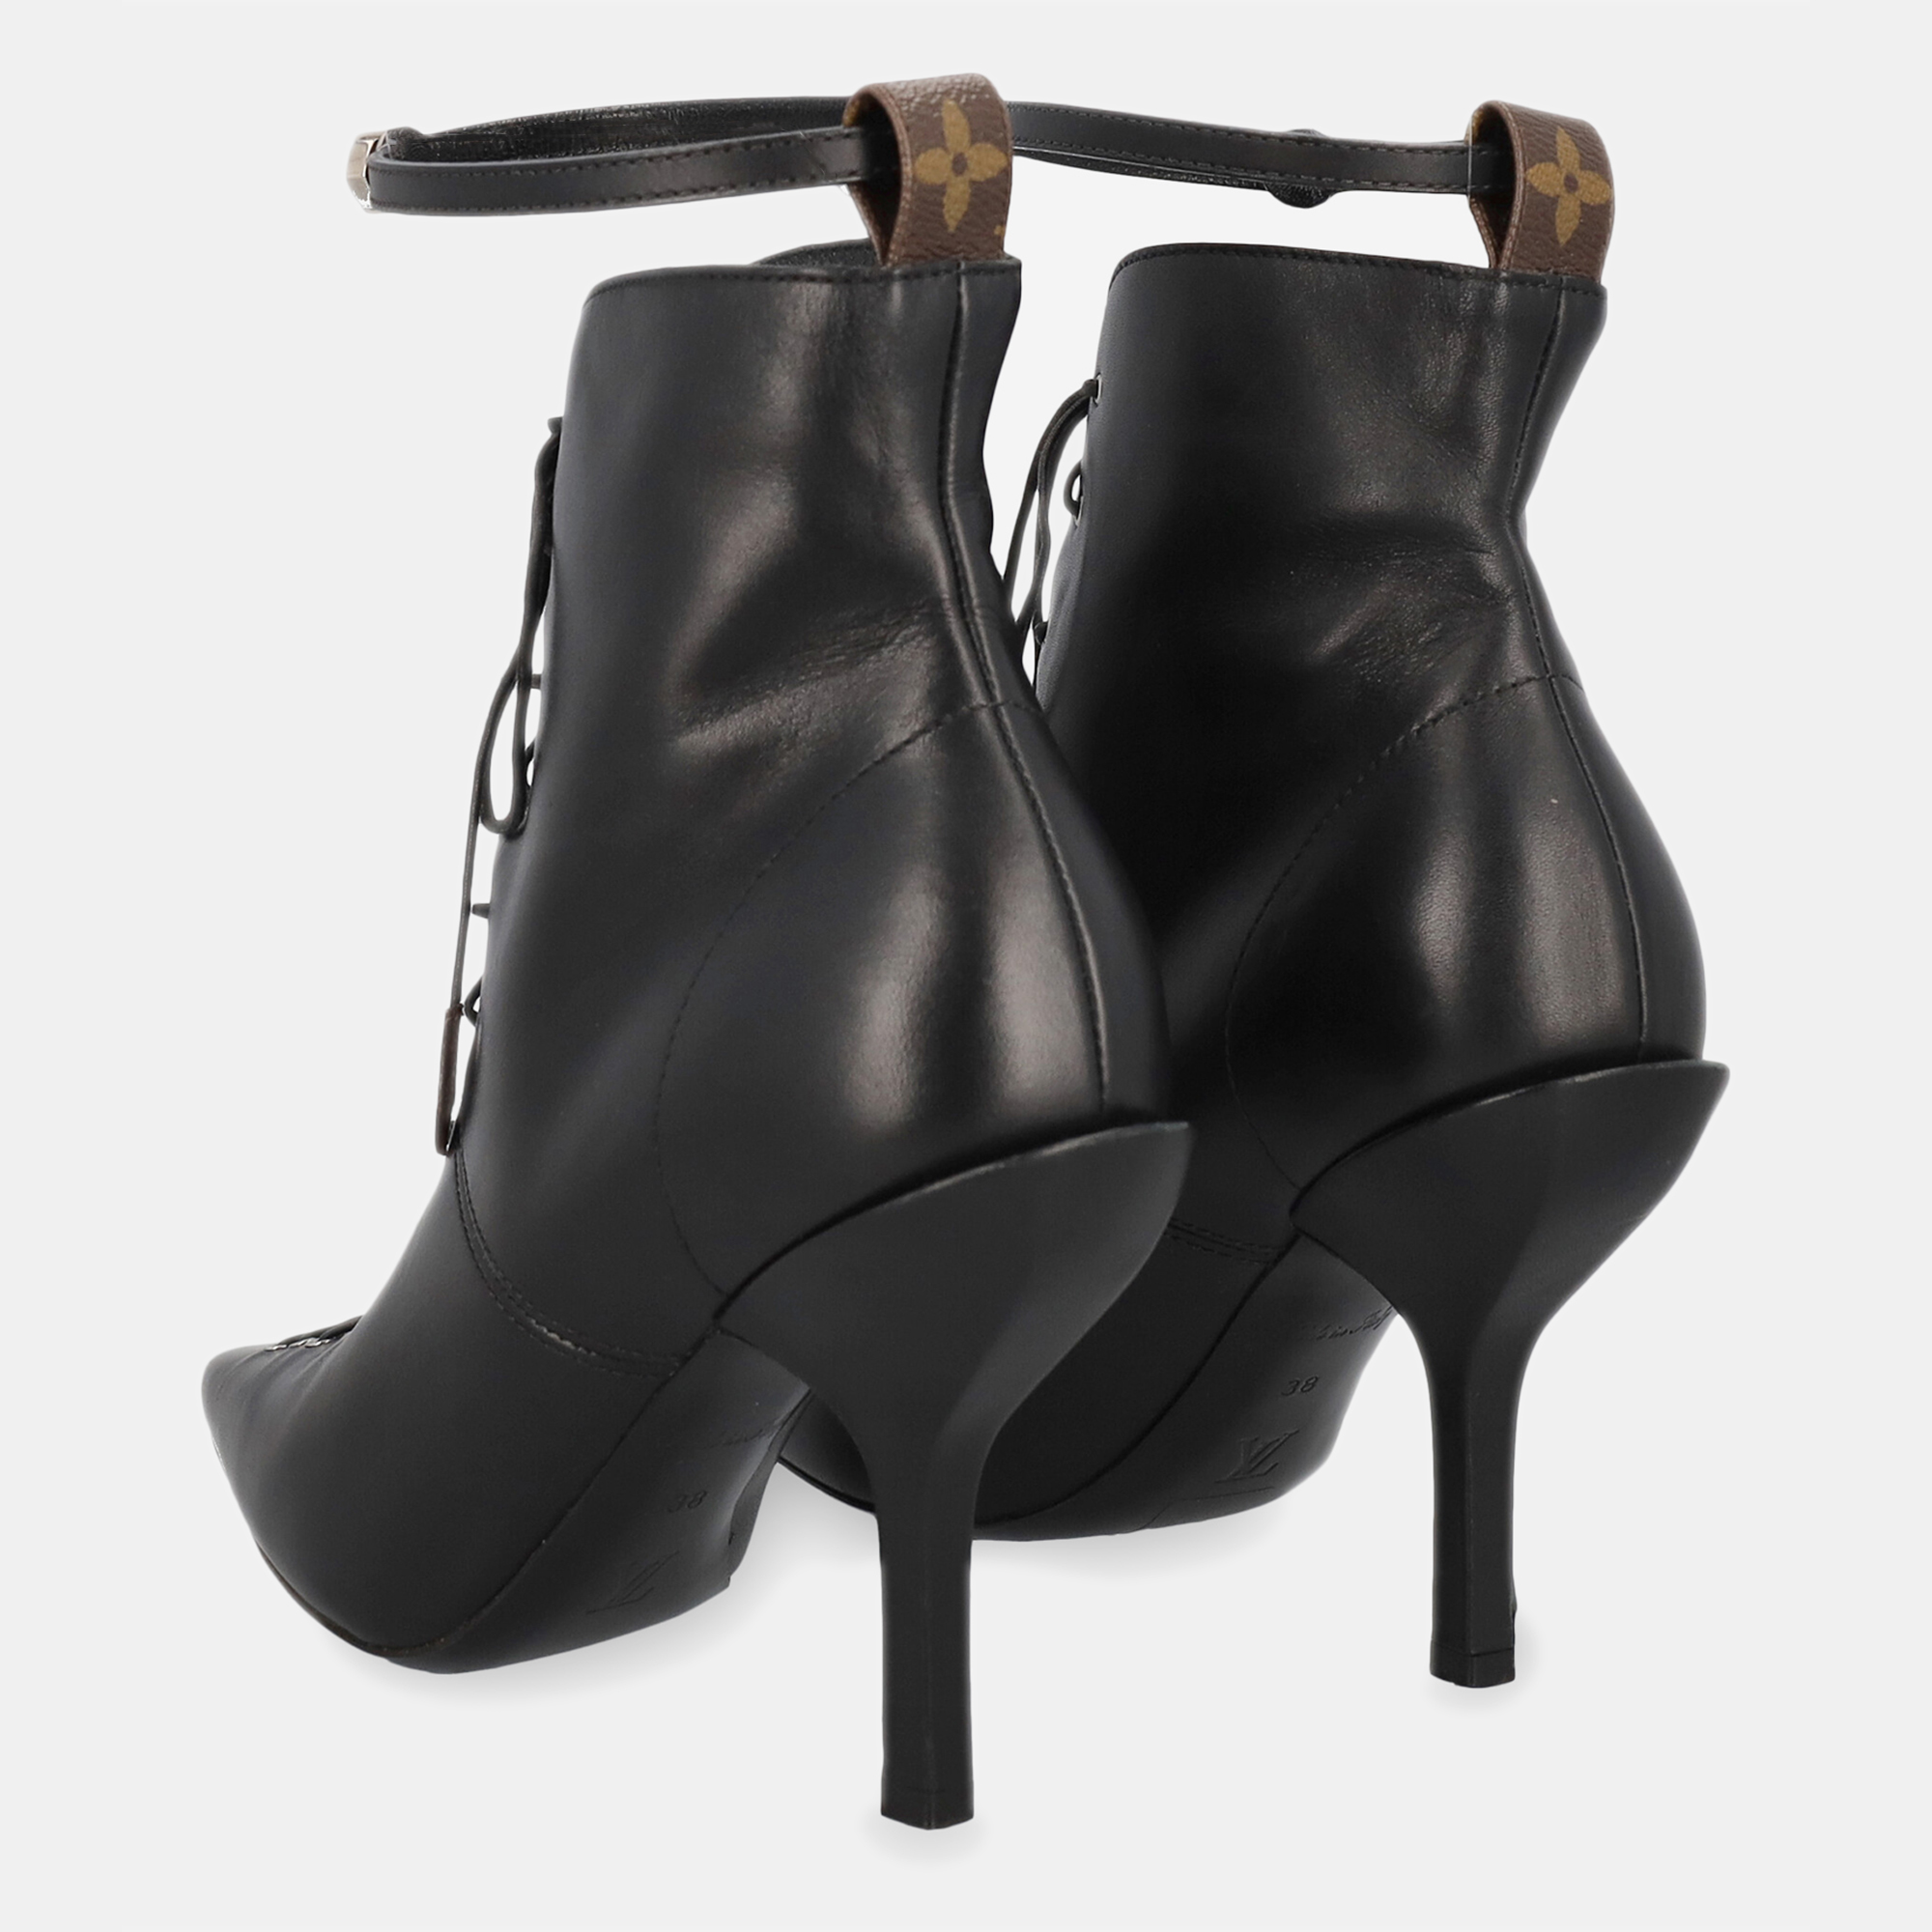 Louis Vuitton  Women's Leather Ankle Boots - Black - EU 38